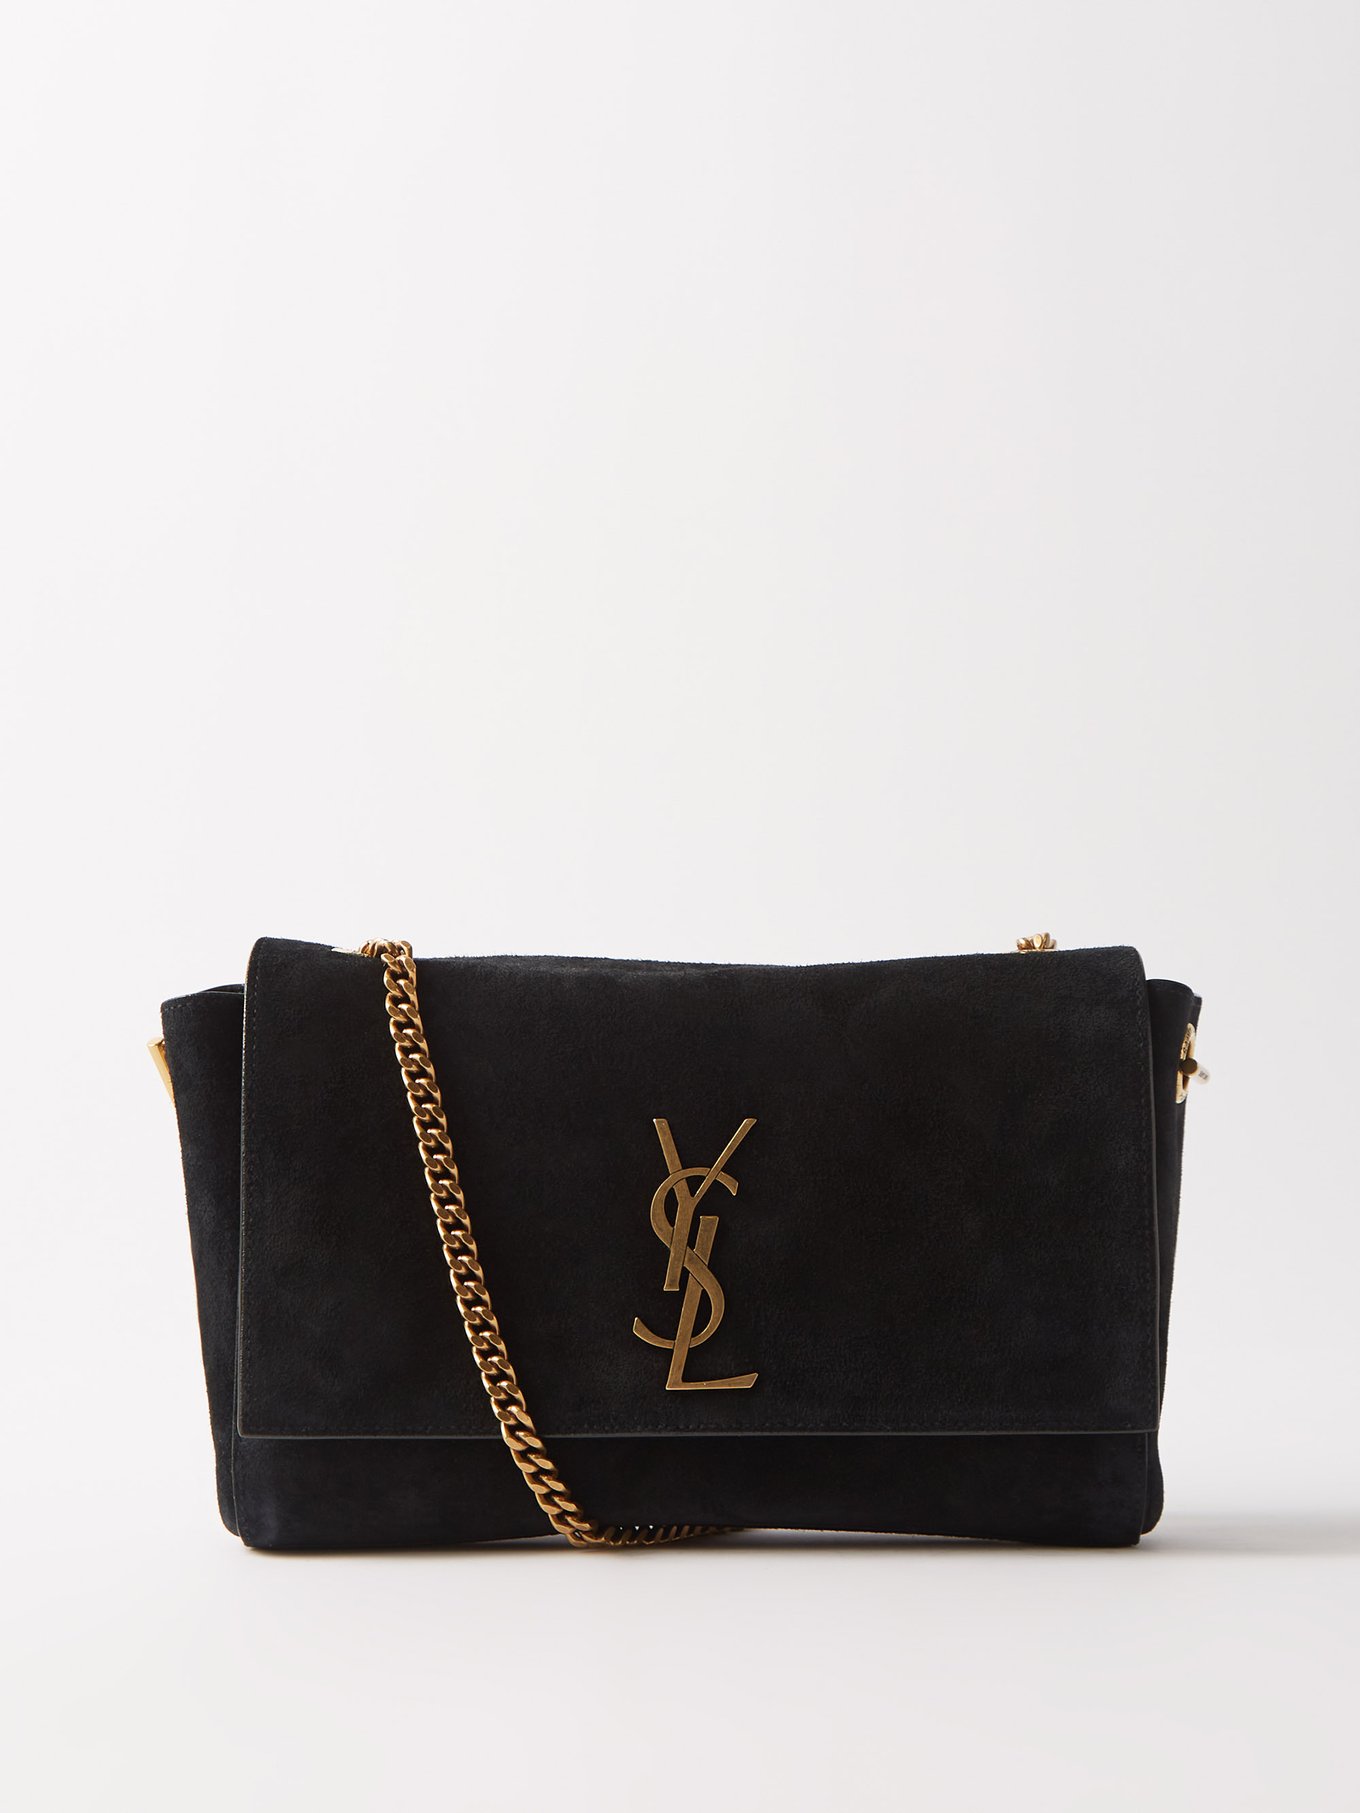 YVES SAINT LAURENT Black Suede Leather Satchel Shoulder Bag